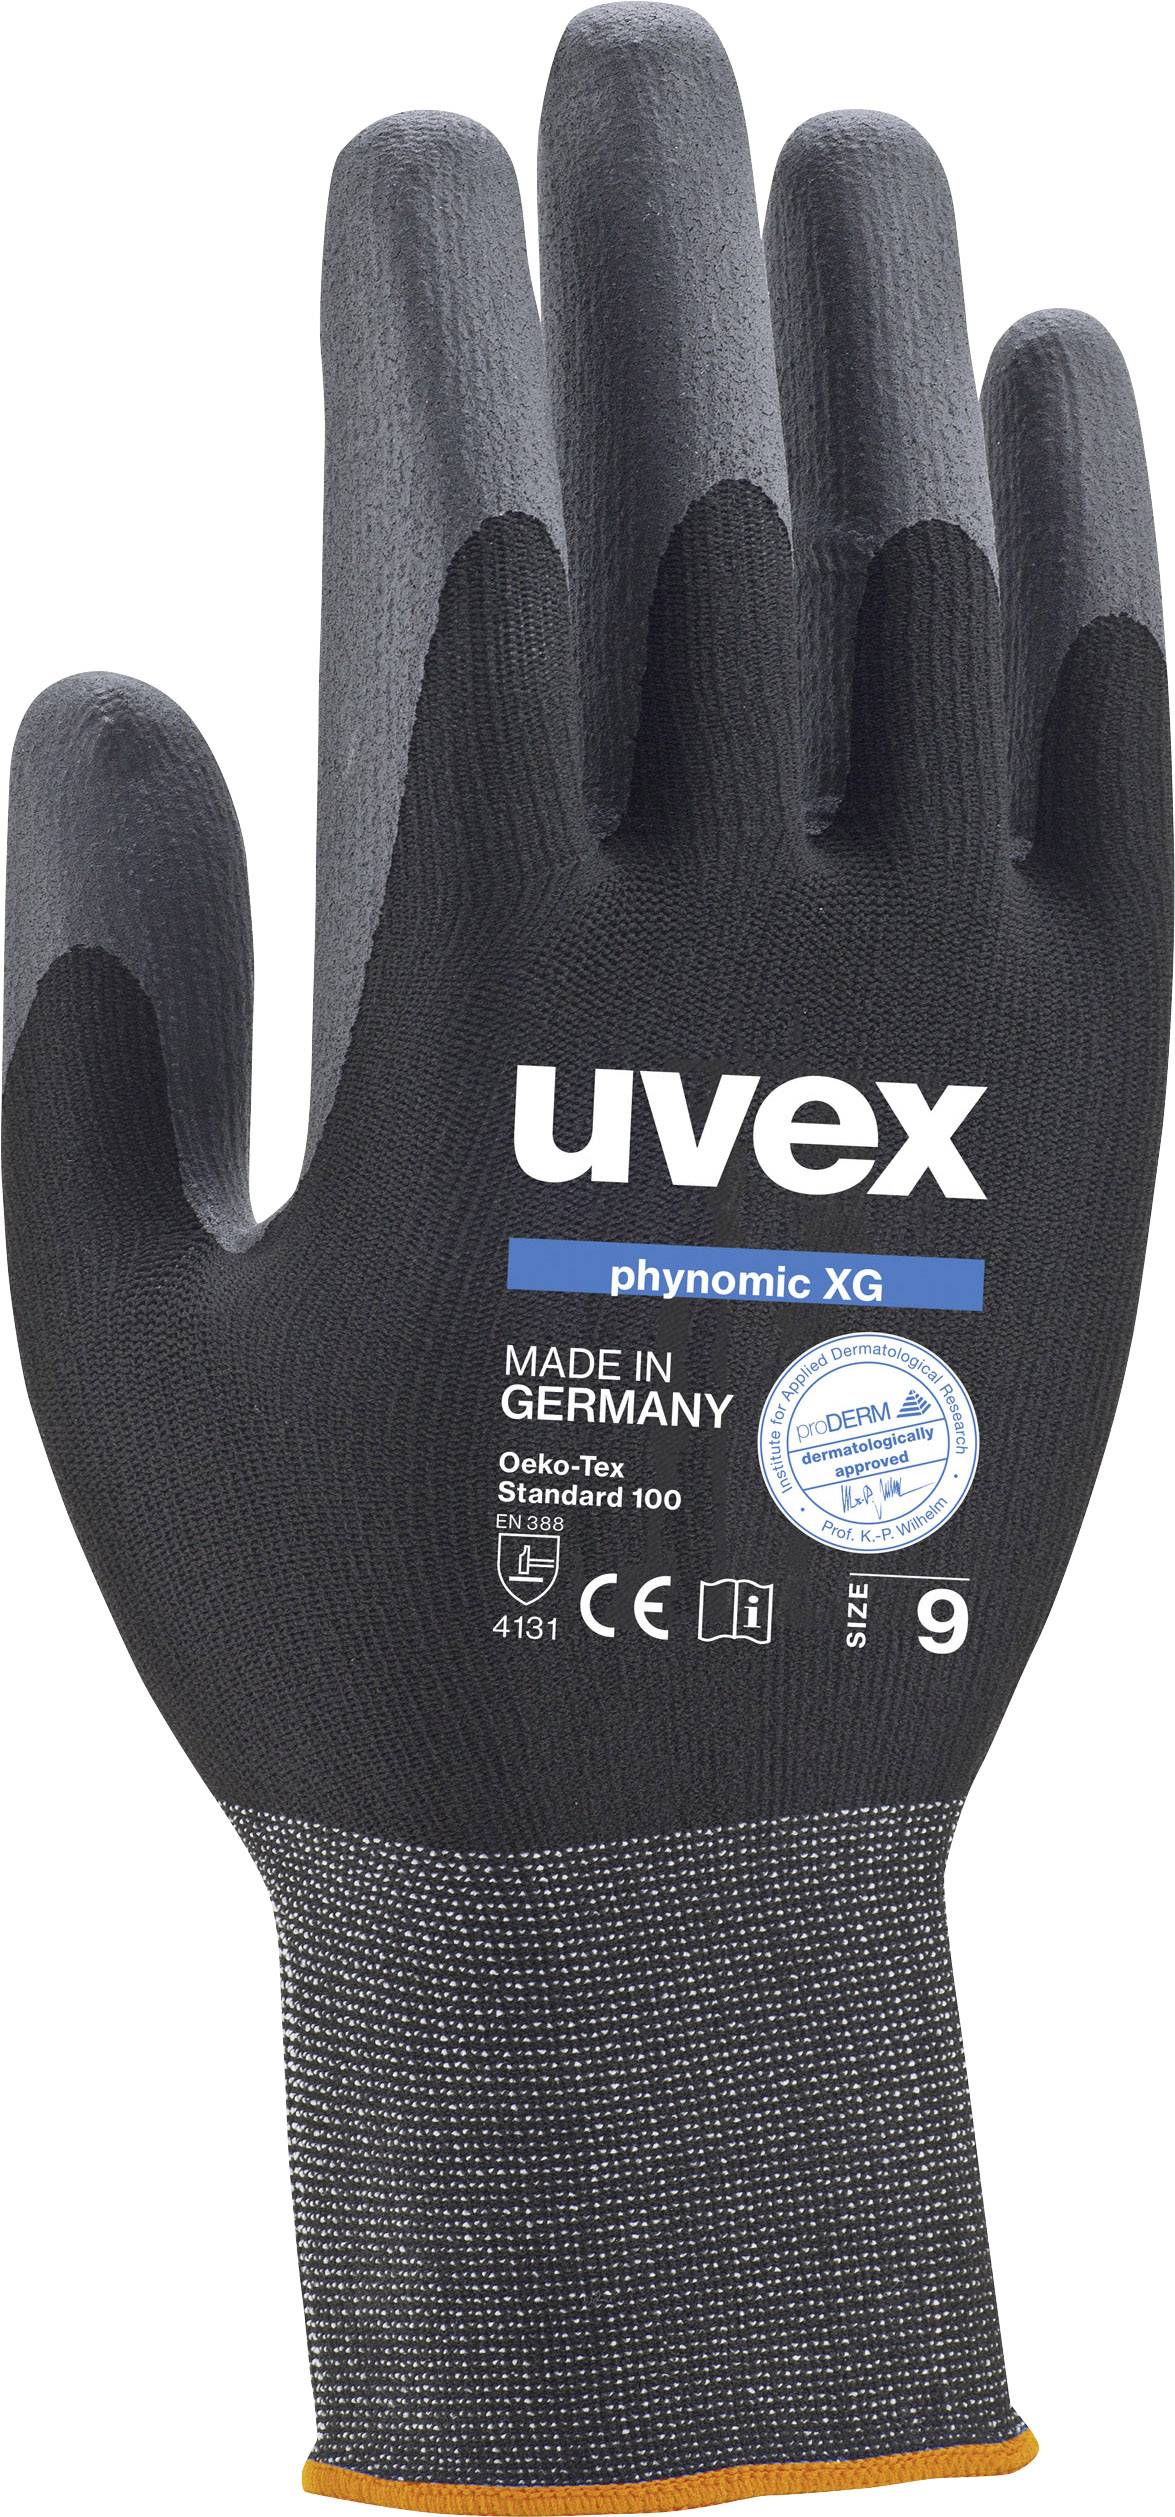 UVEX 6007011 Schutzhandschuh phynomic XG Größe (Handschuhe): 11 (6007011)